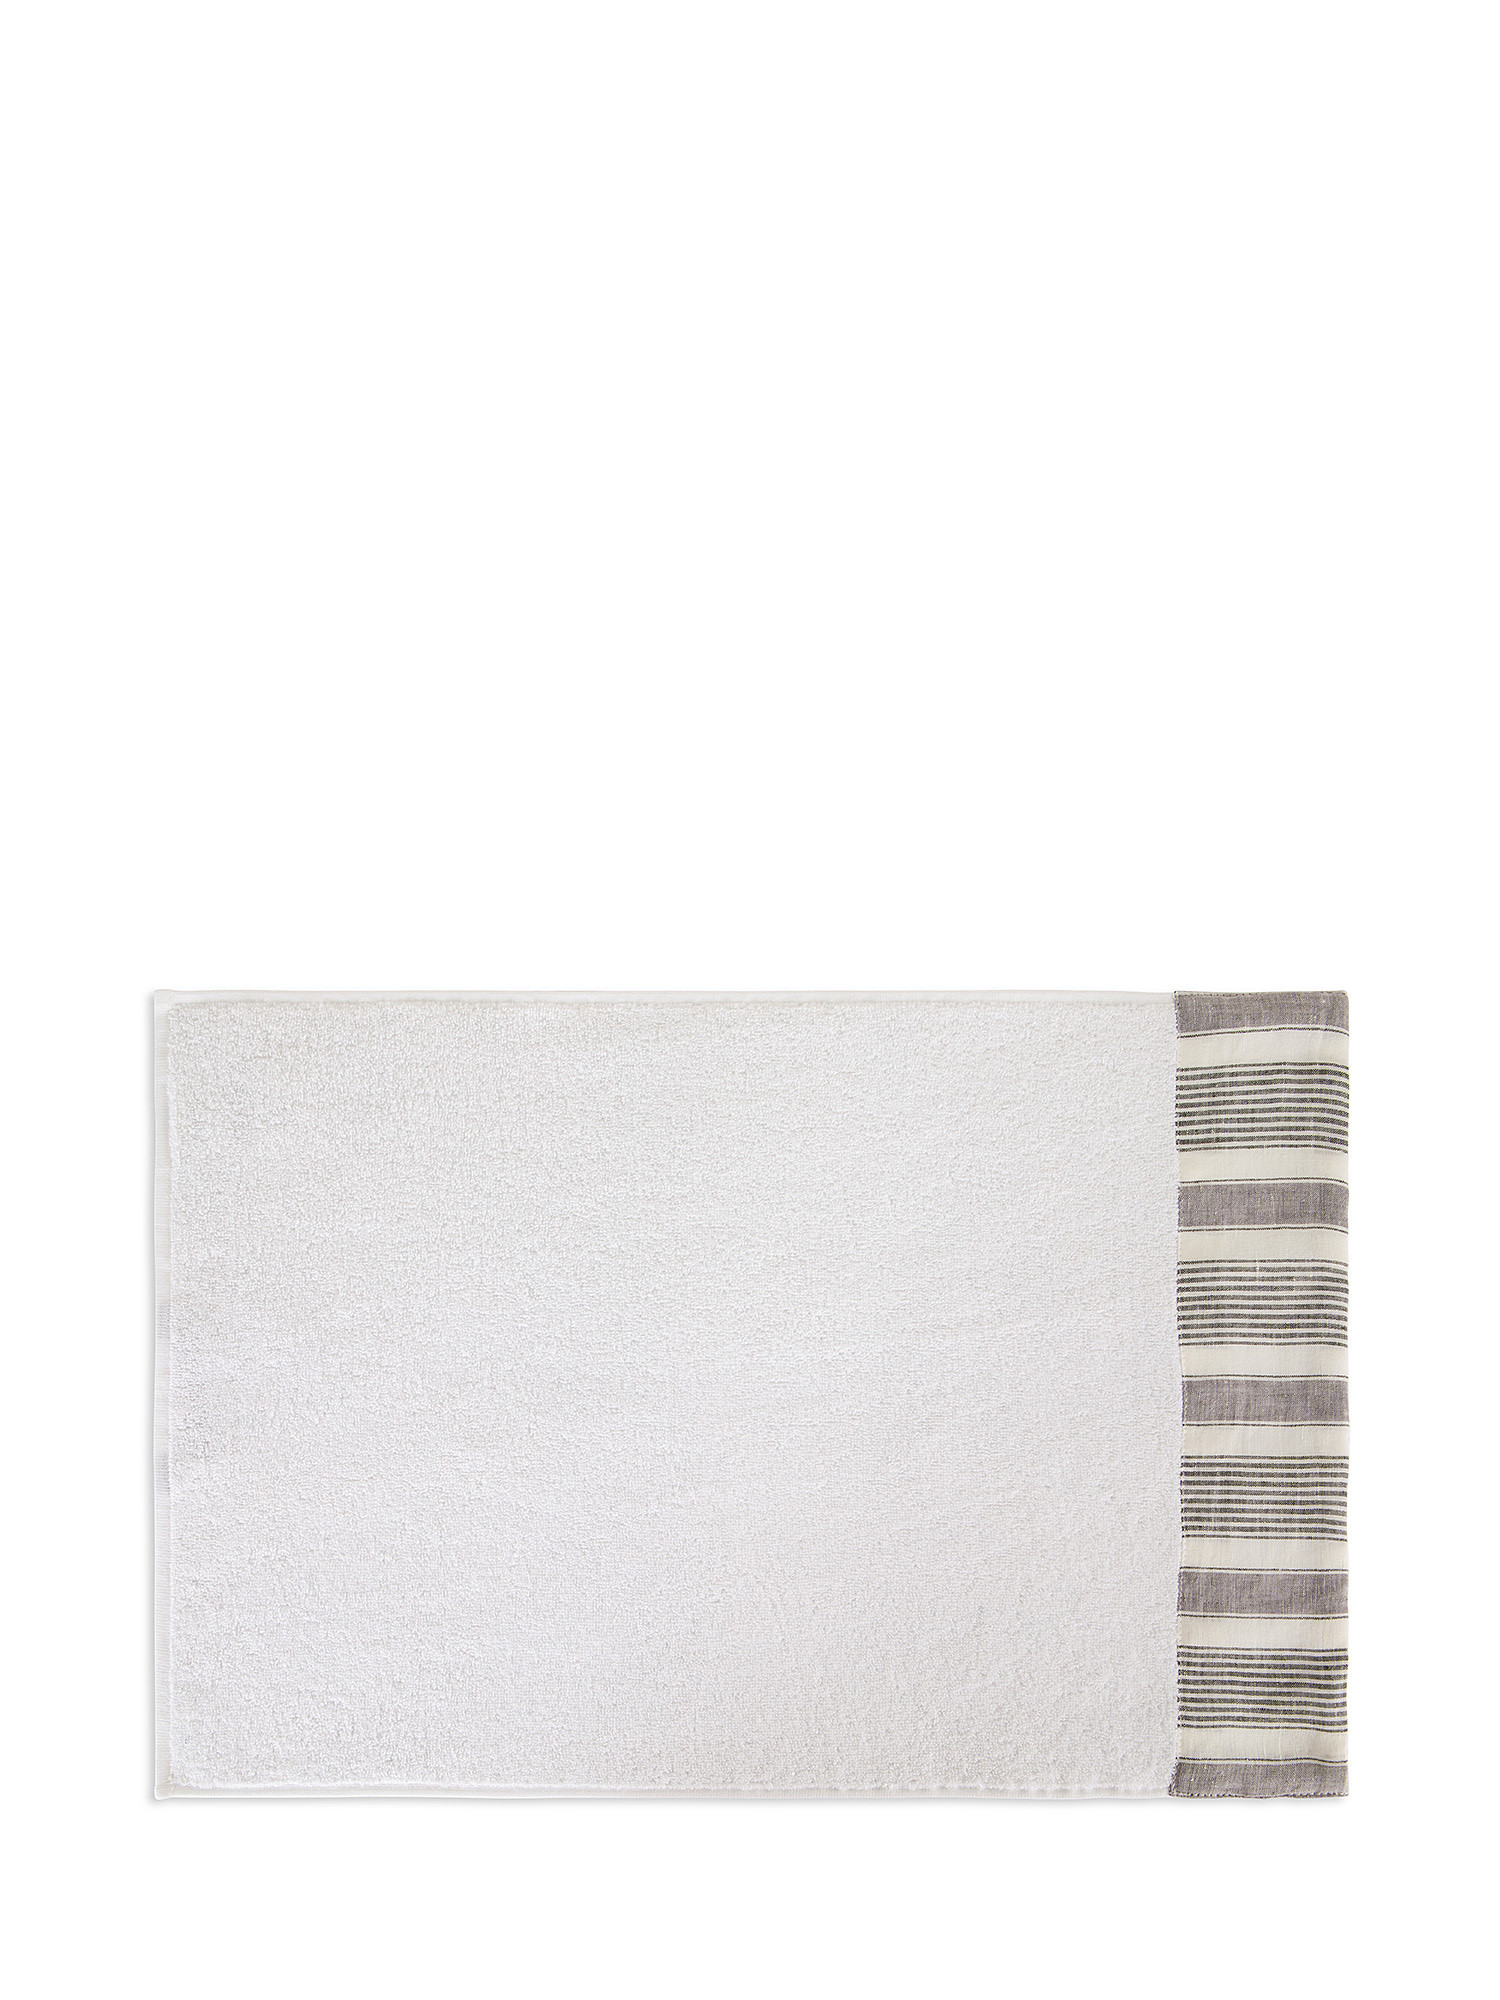 Asciugamano cotone bordo in lino a righe, Bianco, large